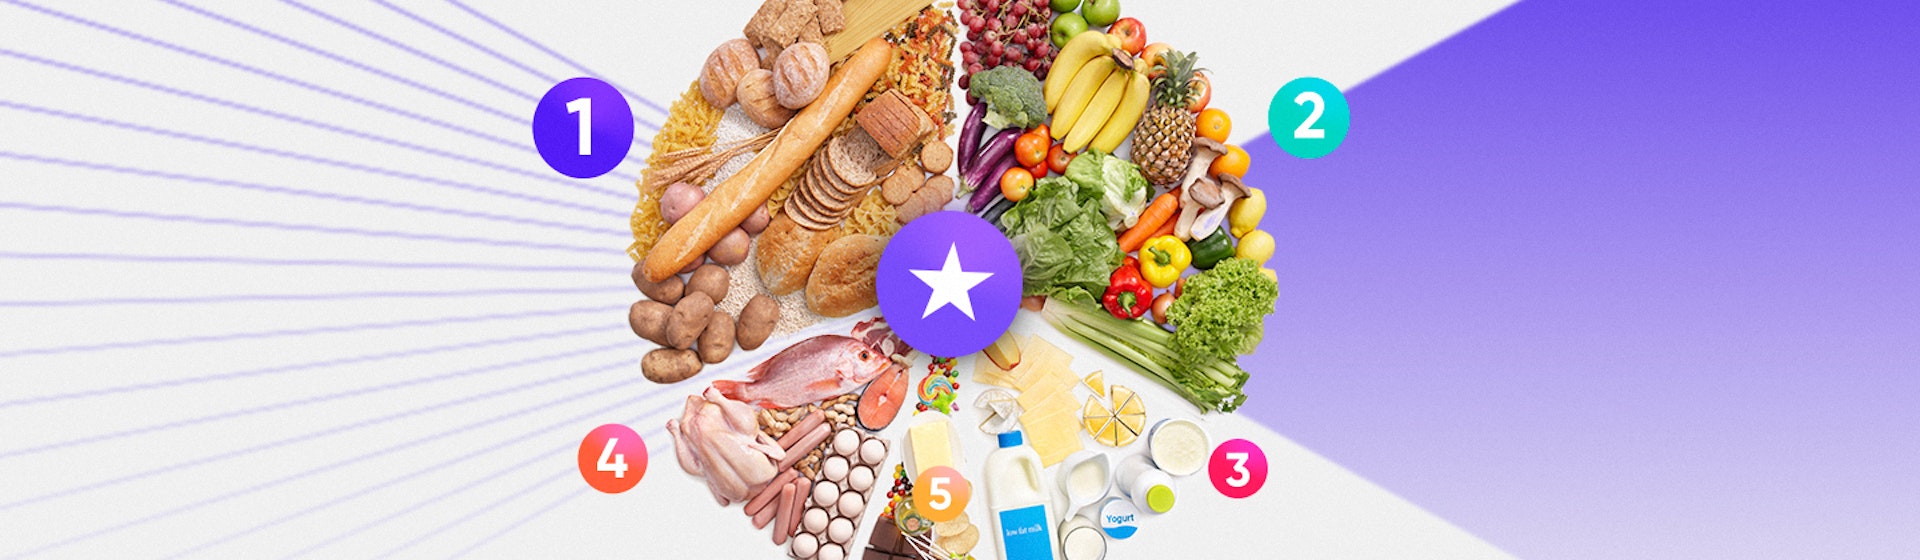 Diferentes tipos de comida: ¿por qué es indispensable mantener una dieta equilibrada con 5 grupos de alimentos?